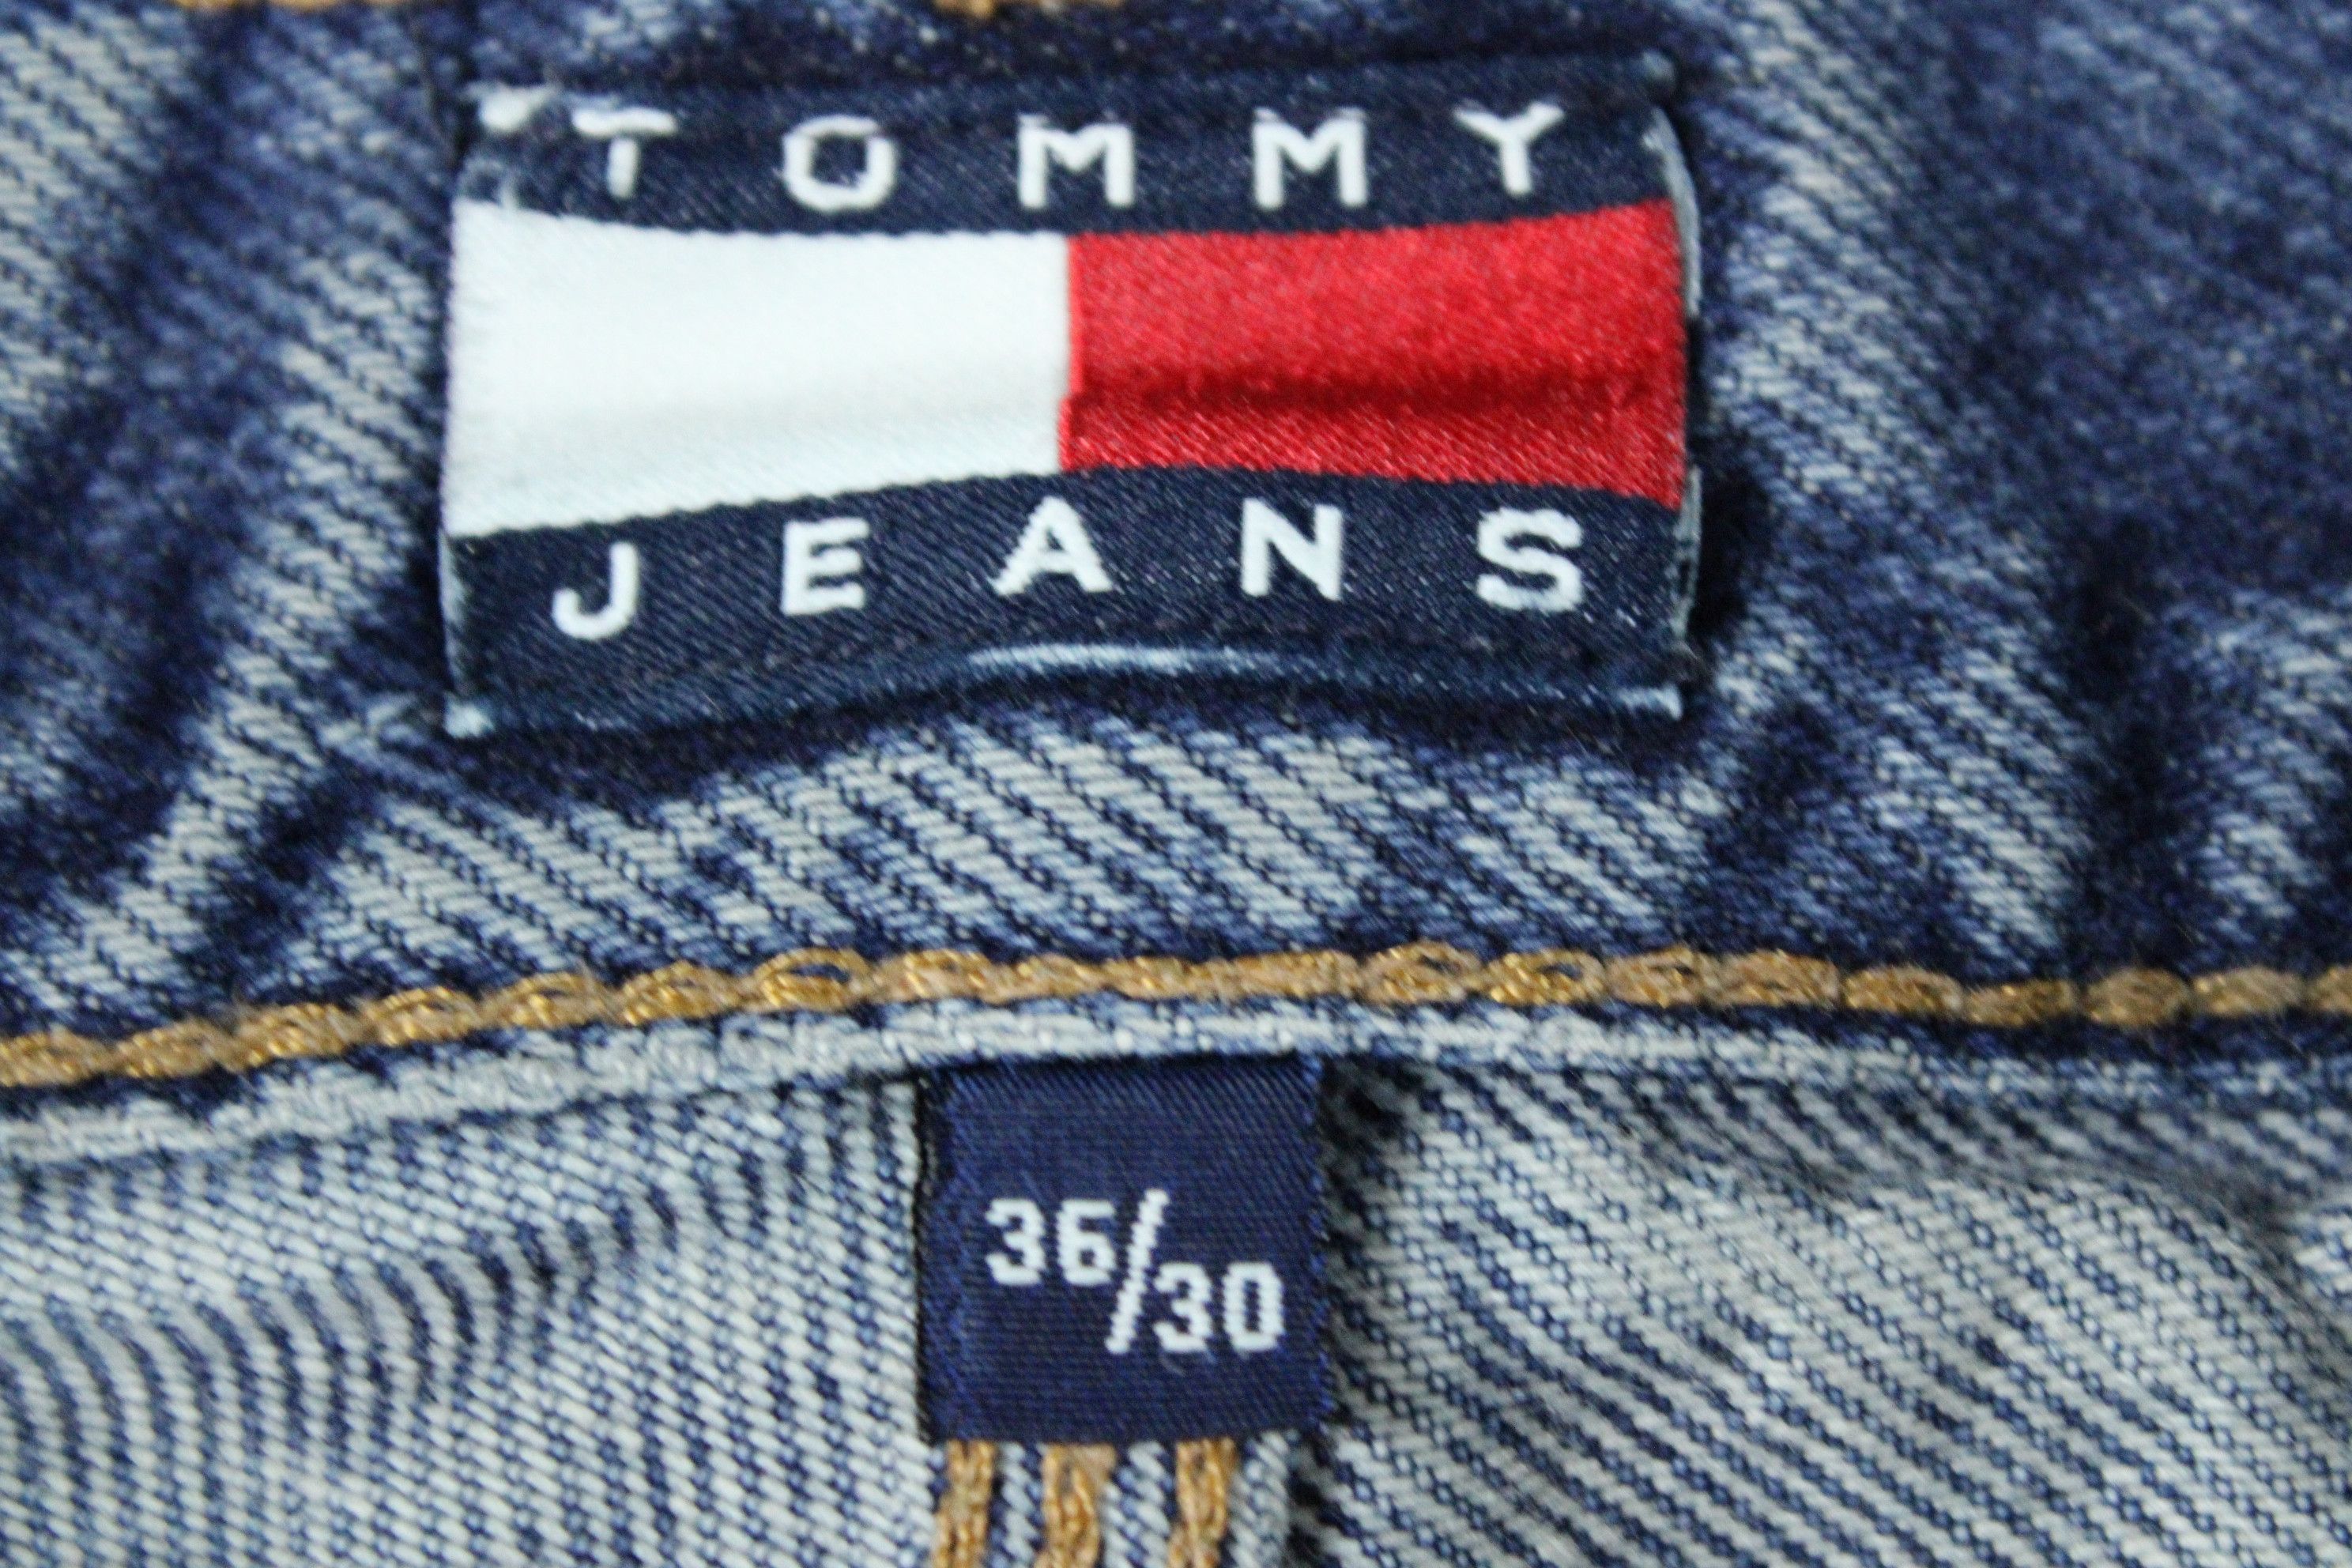 Vintage Vintage Tommy Hilfiger Jeans Denim Trouser Pants Size US 36 / EU 52 - 6 Thumbnail